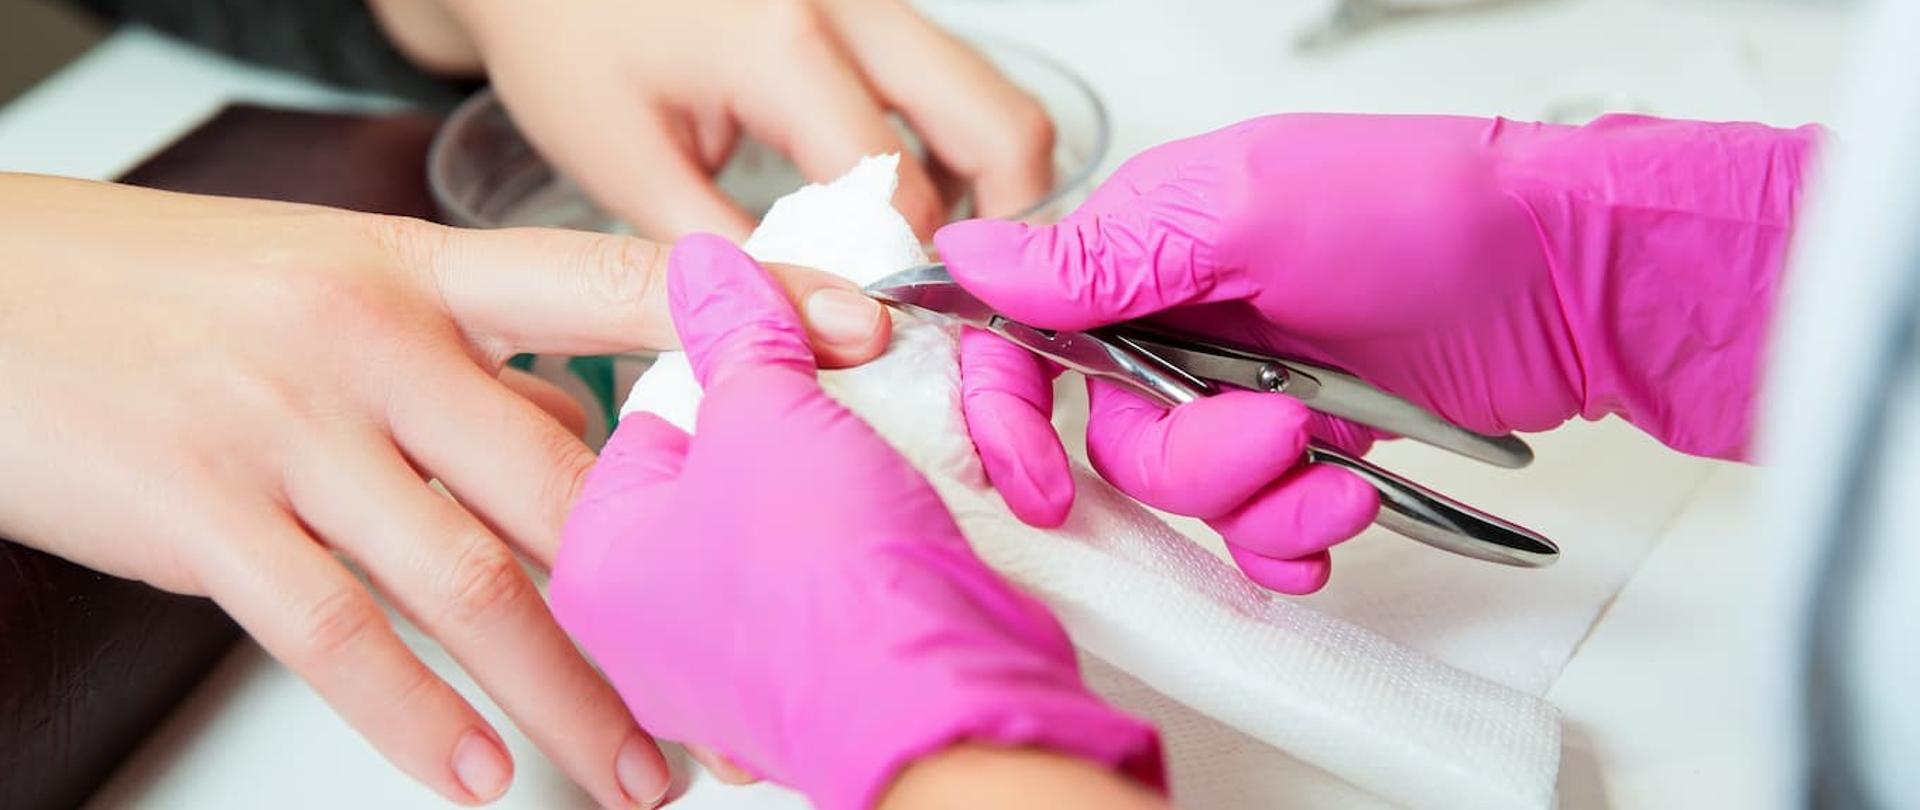 Zdjęcie przedstawia dłonie kosmetyczki w różowych, gumowych rękawiczkach dokonujące manicure klientce.